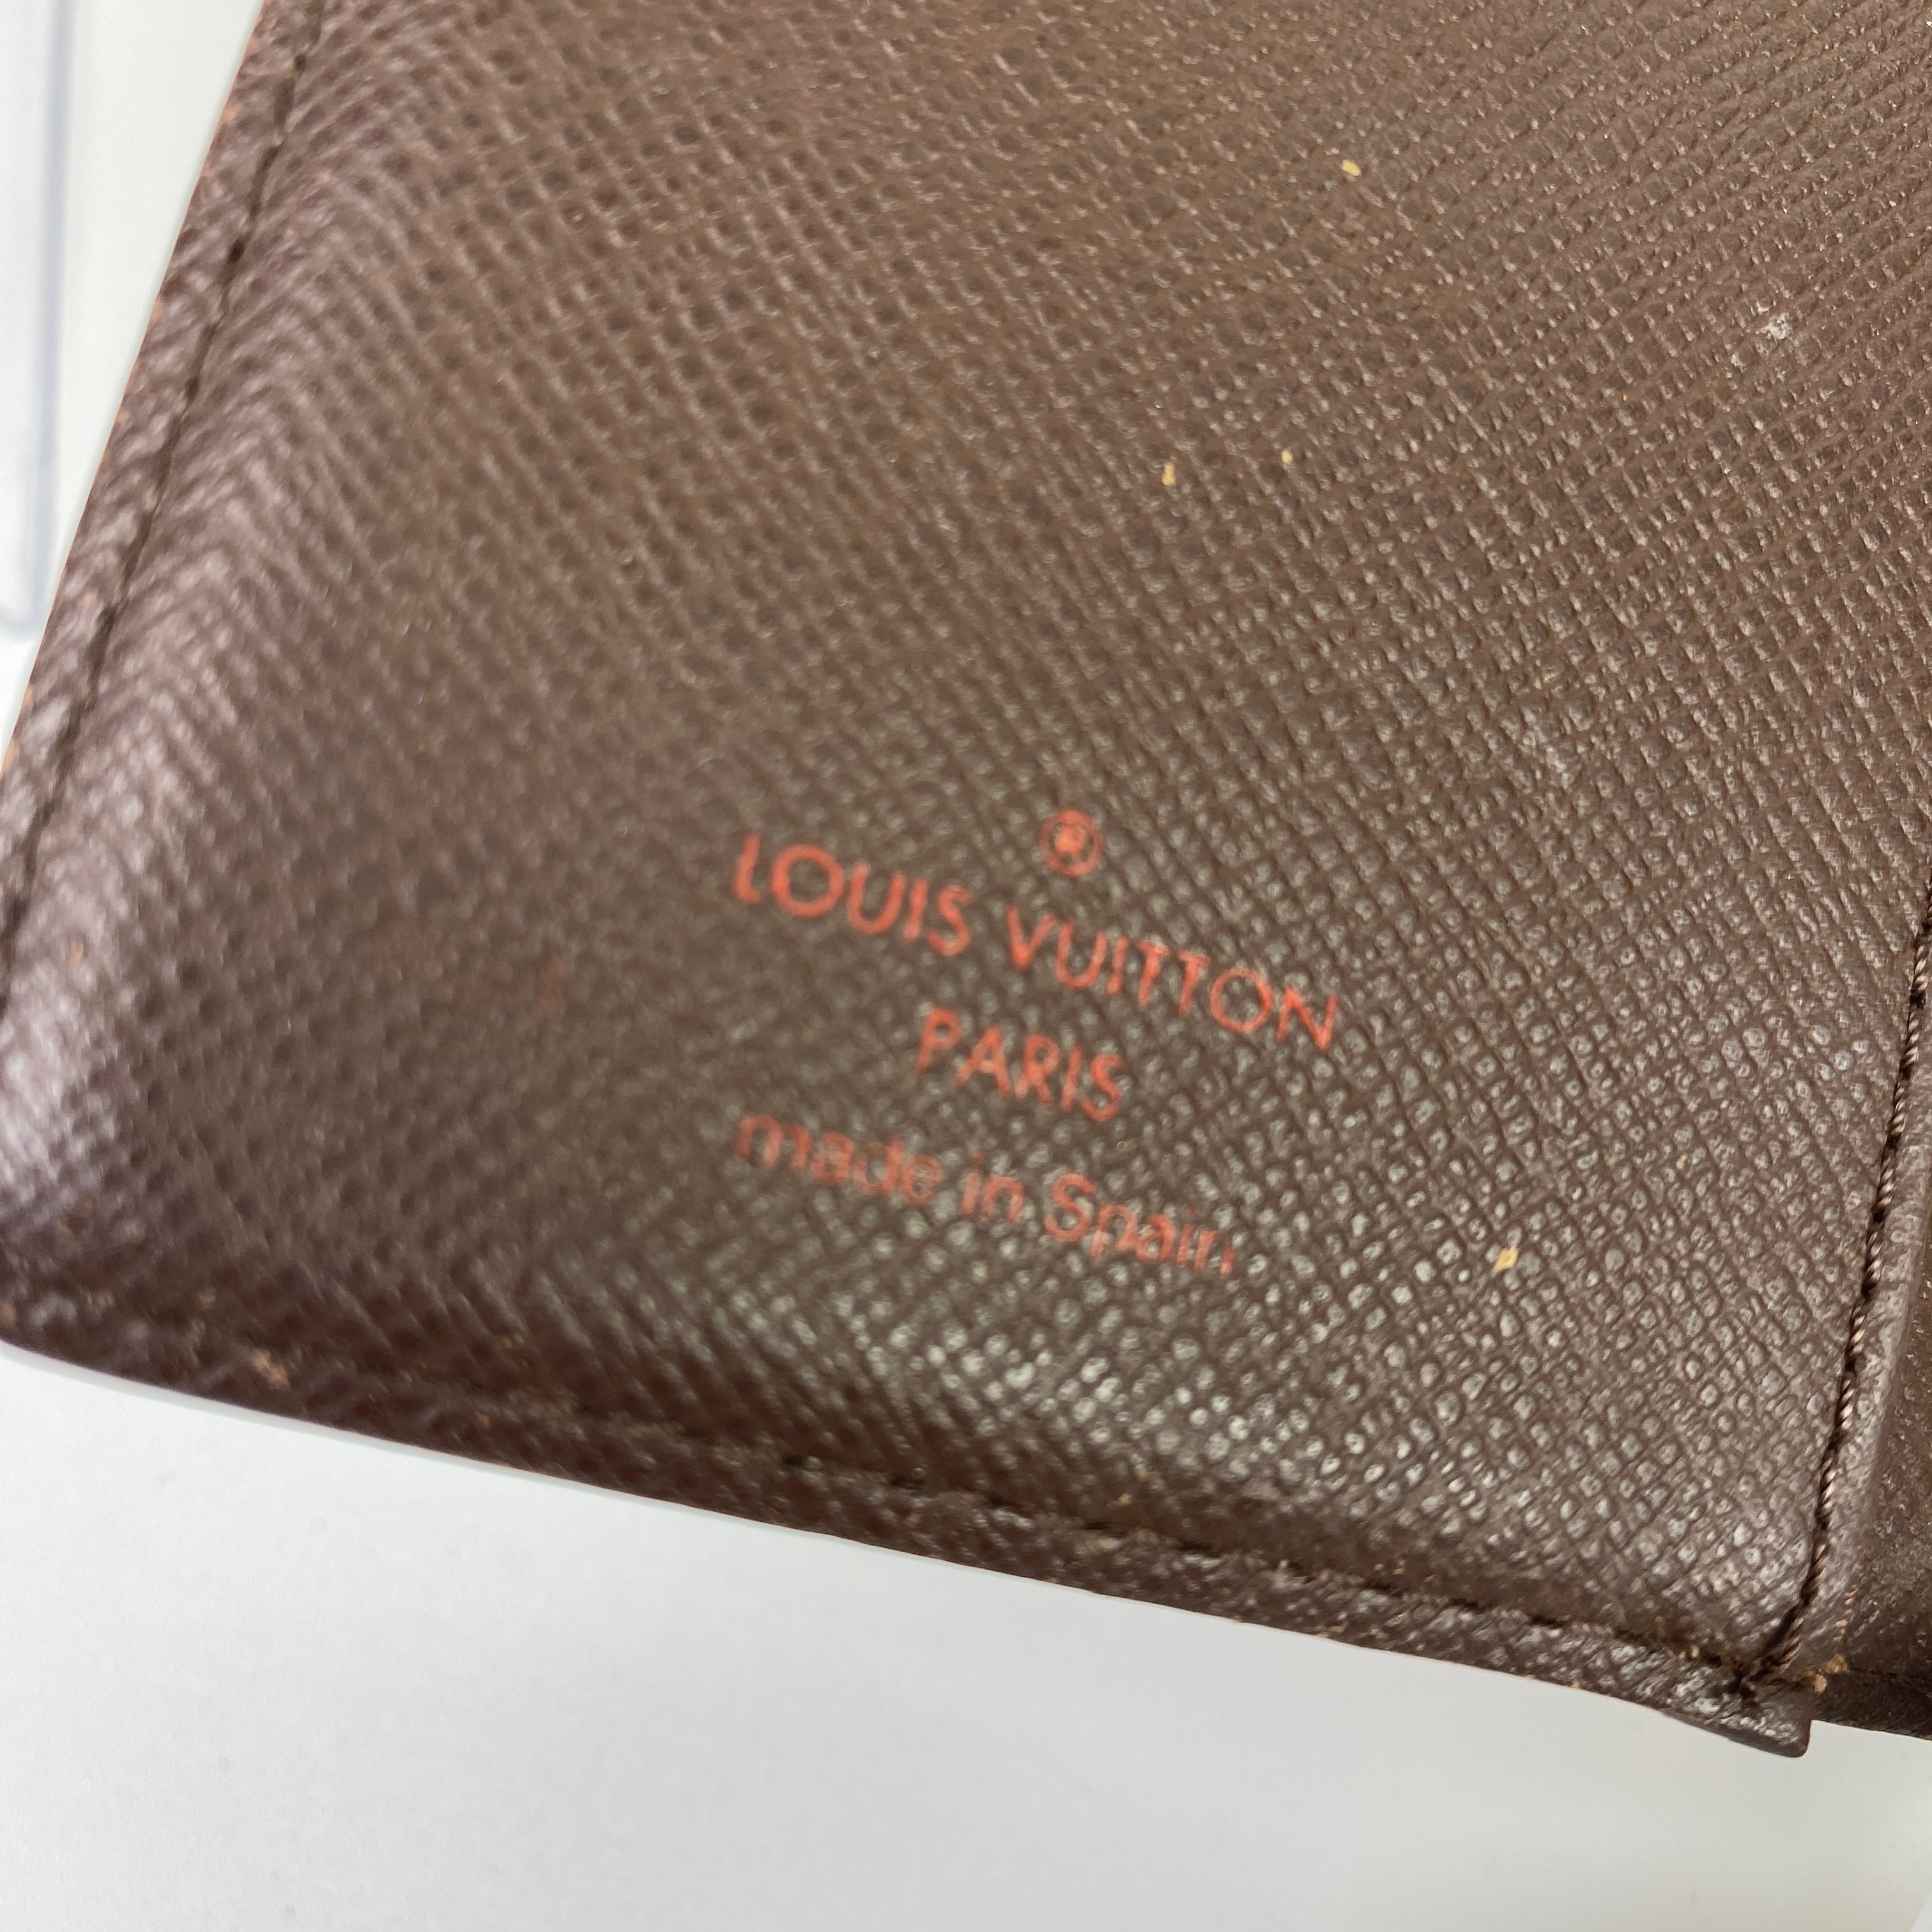 Louis Vuitton ルイヴィトン ダミエ アジェンダPM手帳カバー ブラウン